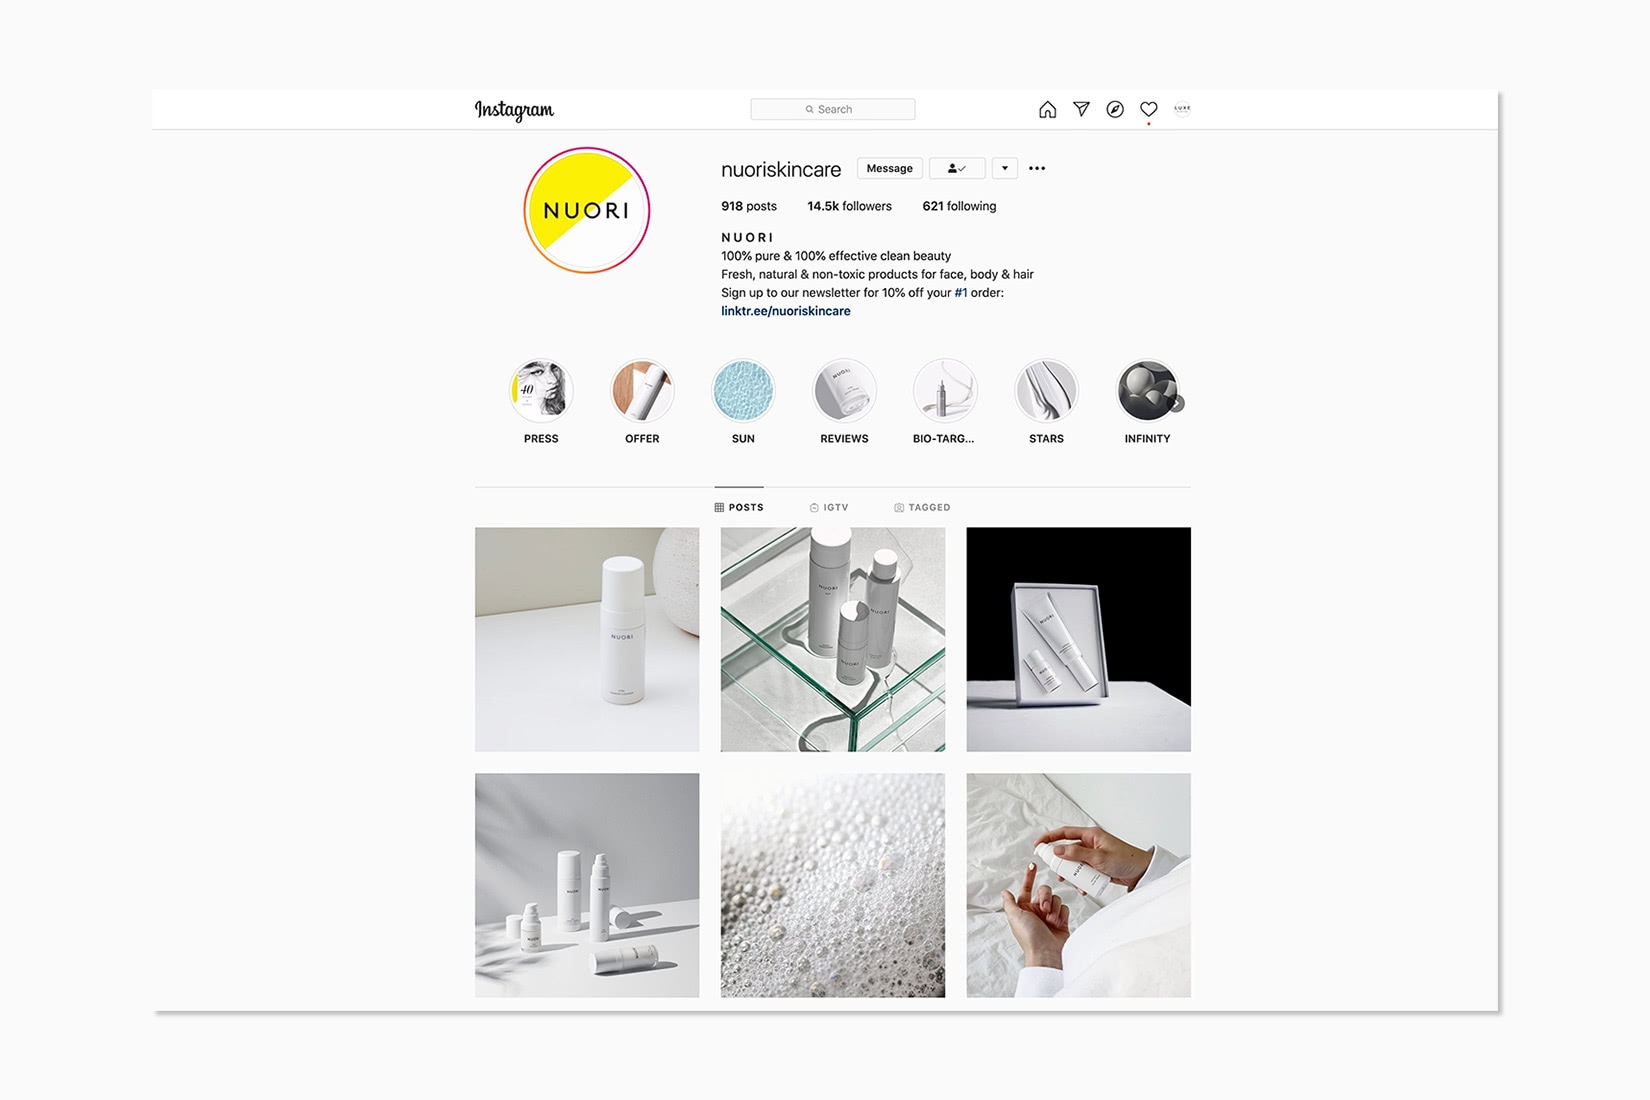 vente en ligne de produits de beauté de luxe nuori instagram - Luxe Digital